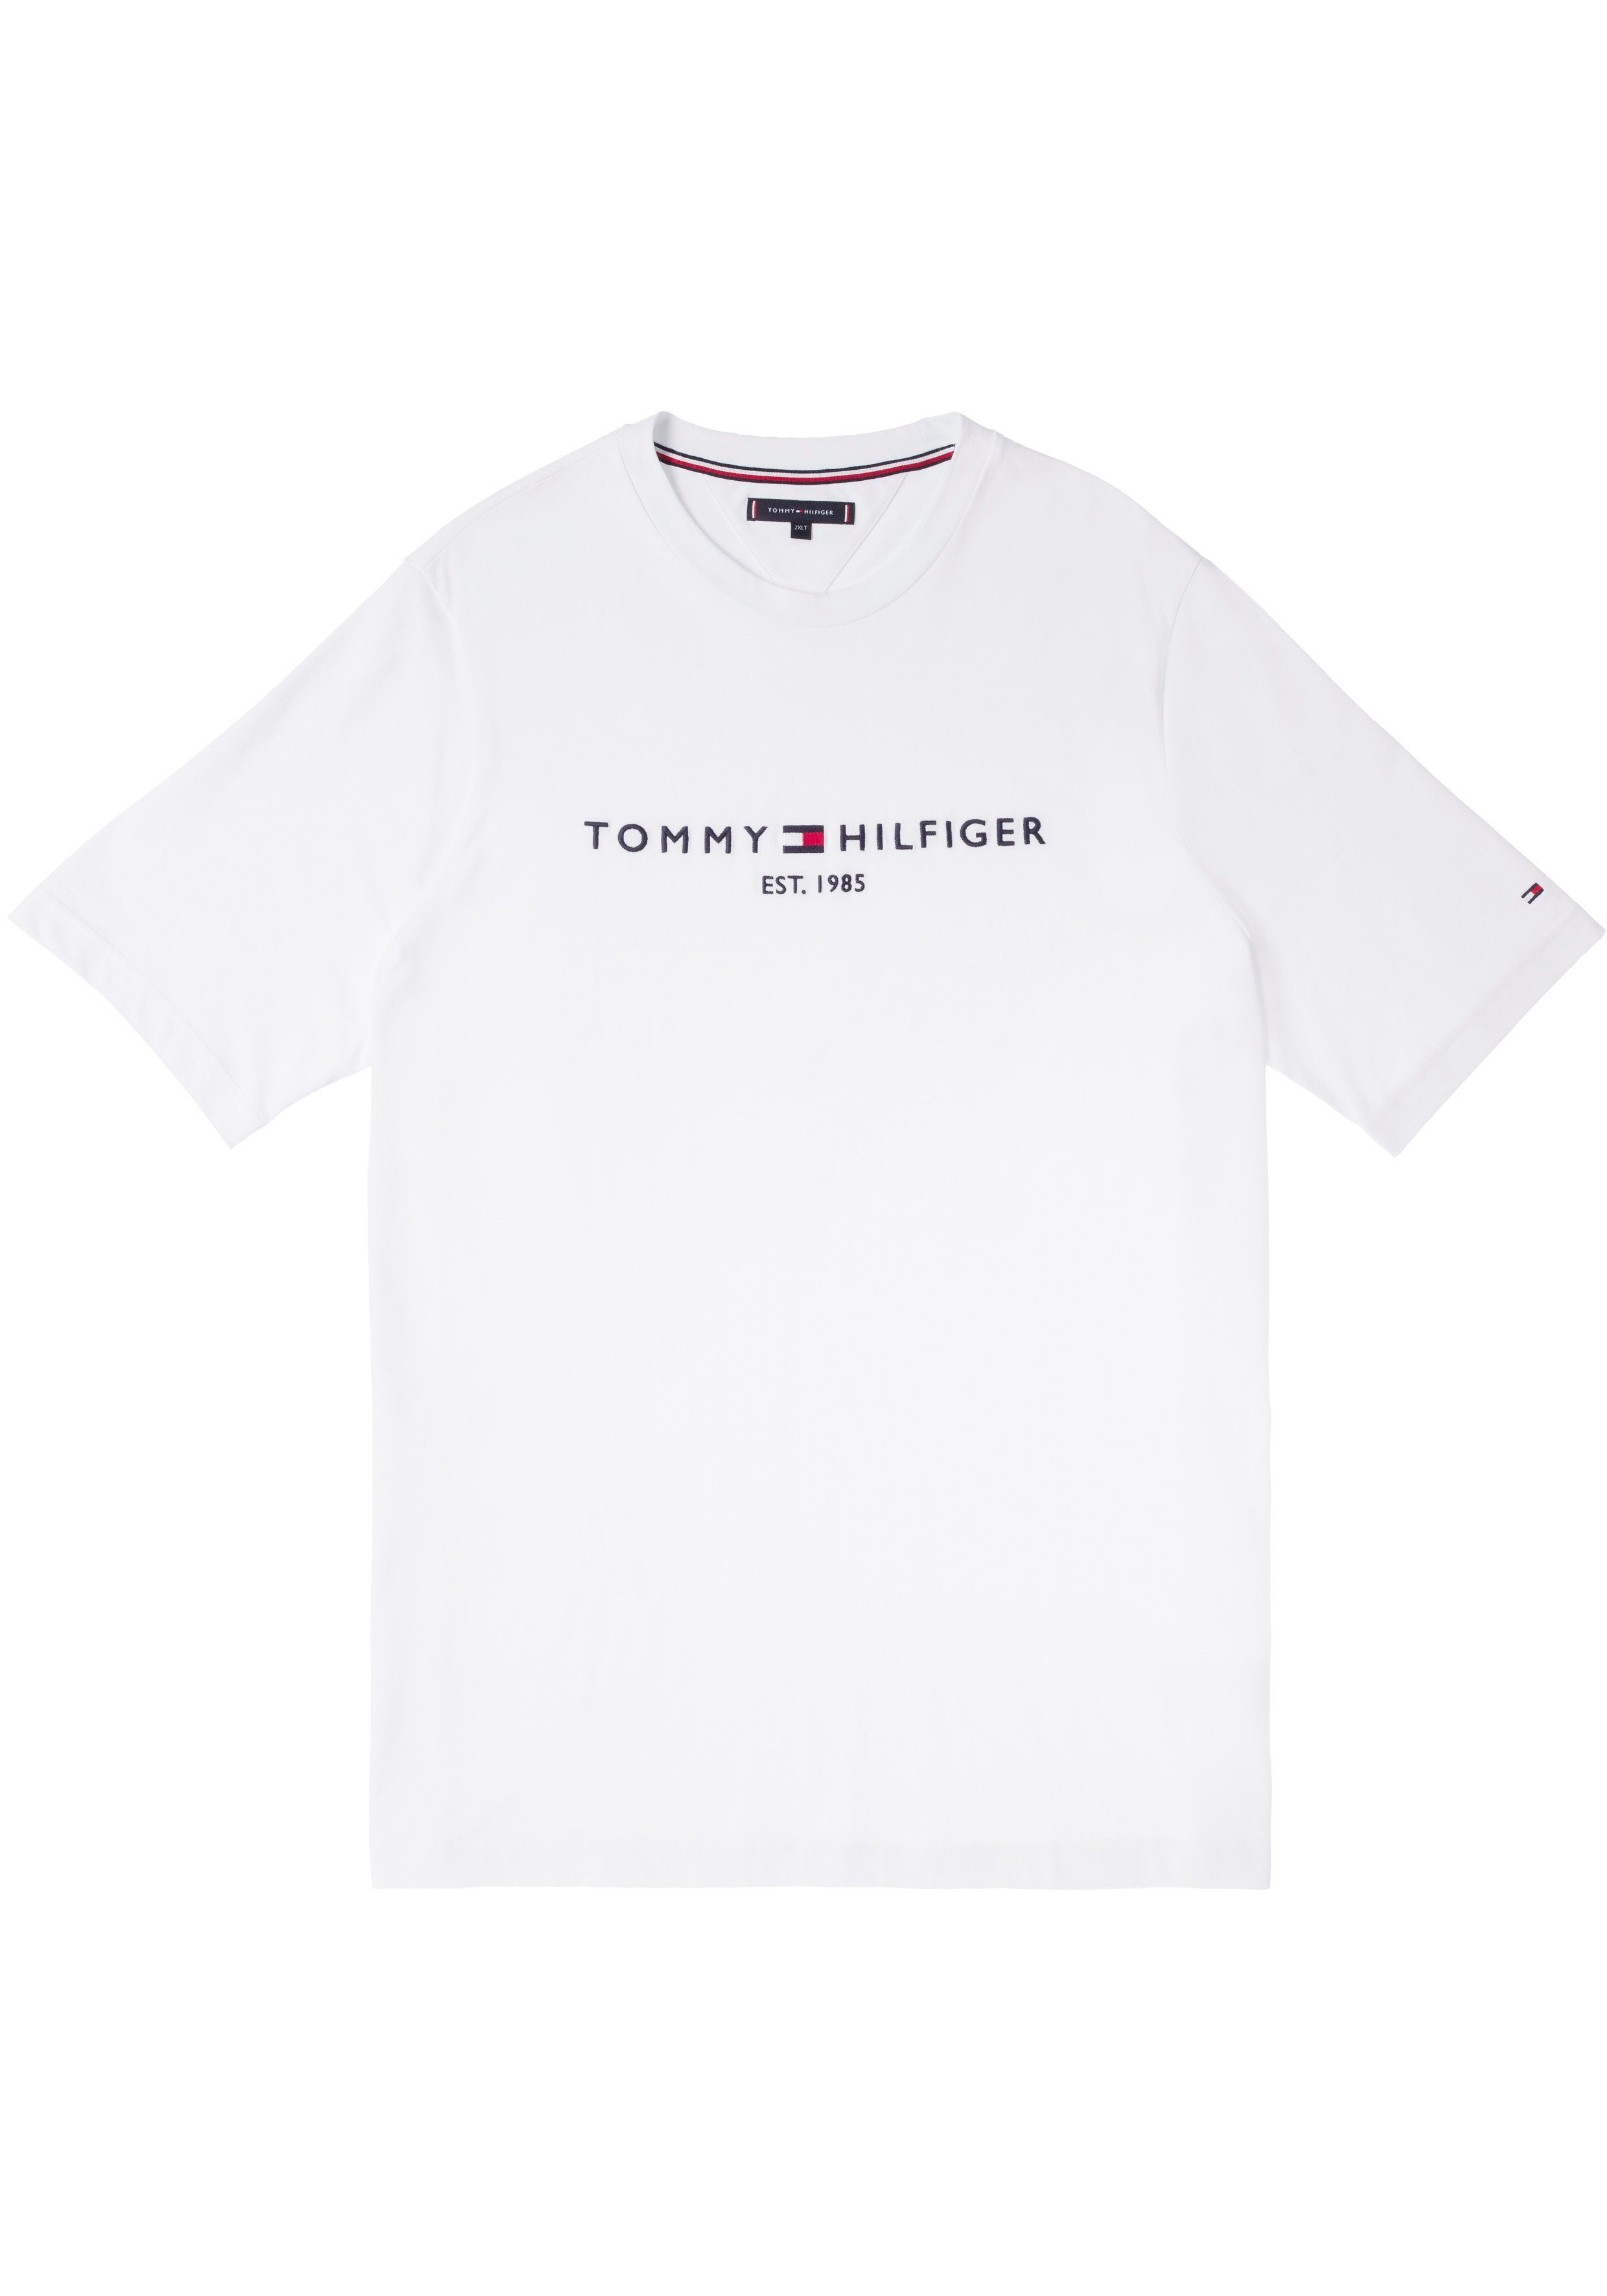 Tommy Hilfiger Big & Brust T-Shirt Tall auf Tommy LOGO TEE-B Logoschriftzug mit Hilfiger weiß BT-TOMMY der